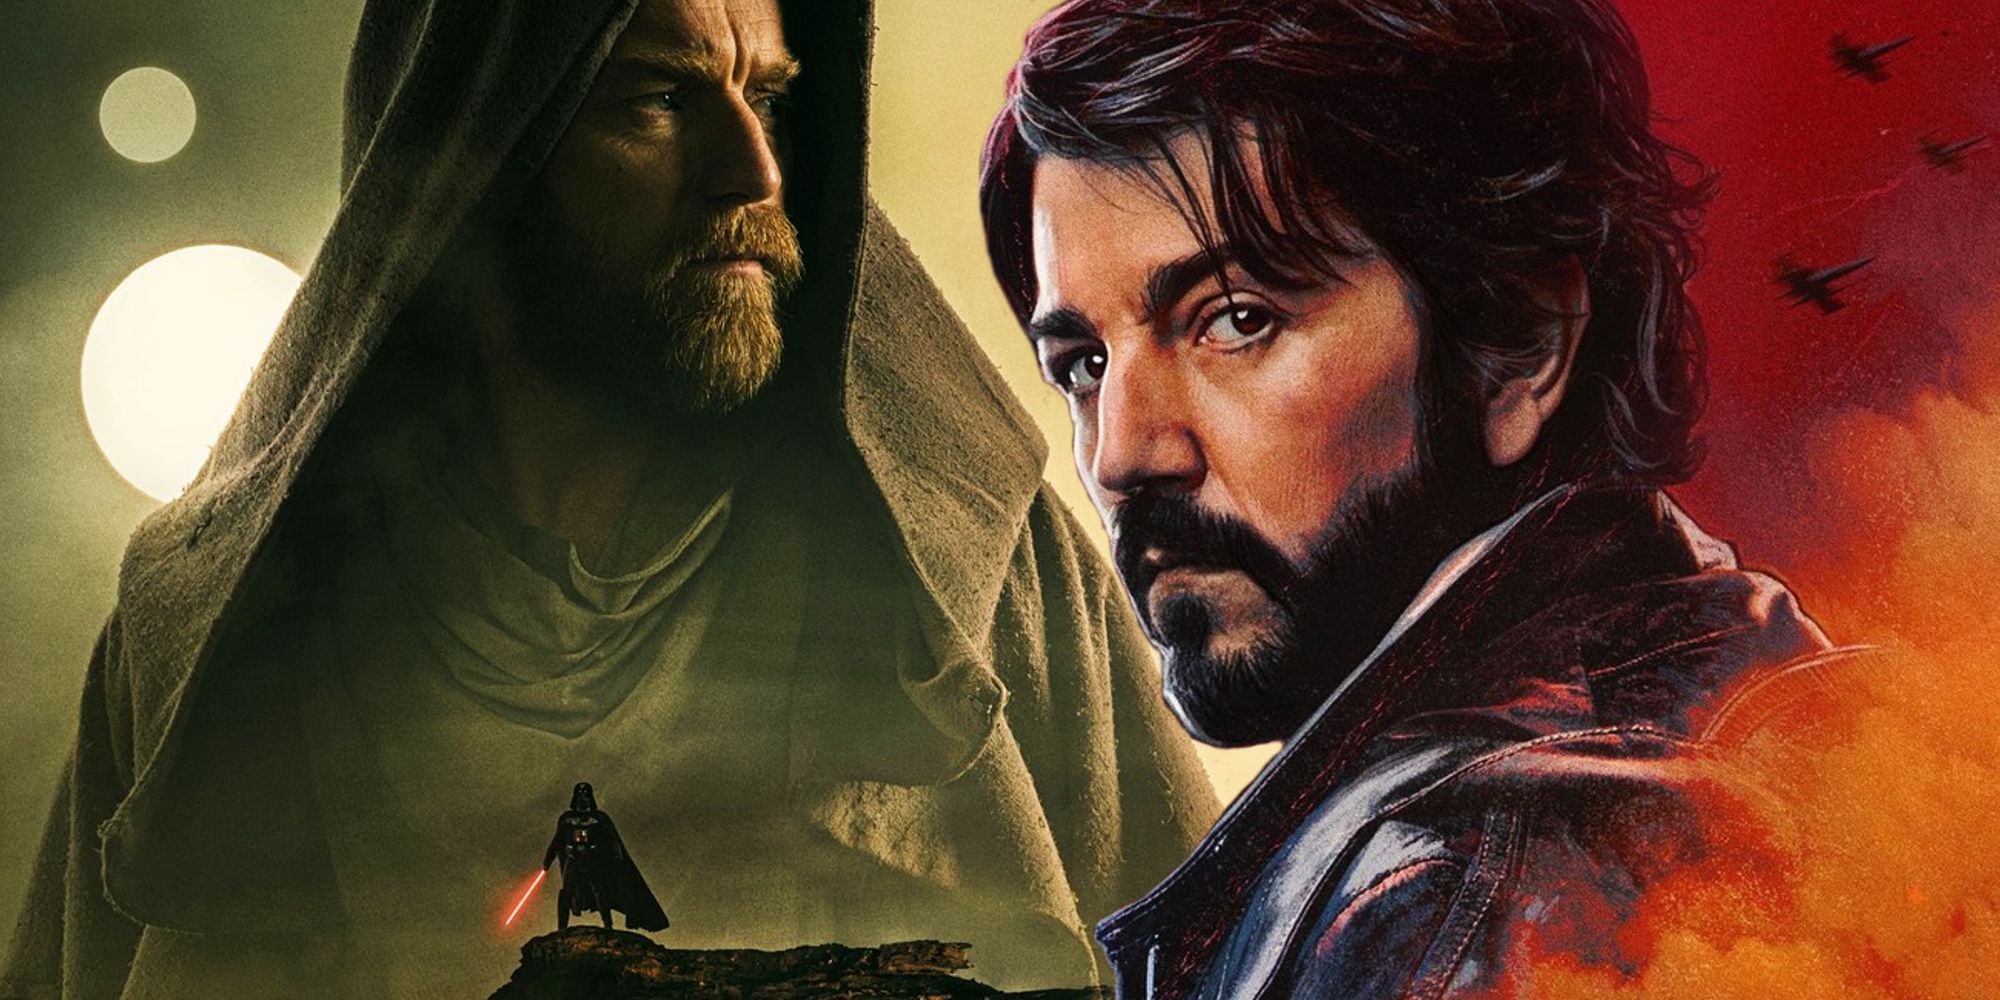 Se anuncia el lanzamiento en Blu-Ray de la temporada 1 de Obi-Wan Kenobi & Andor, se confirman las características especiales